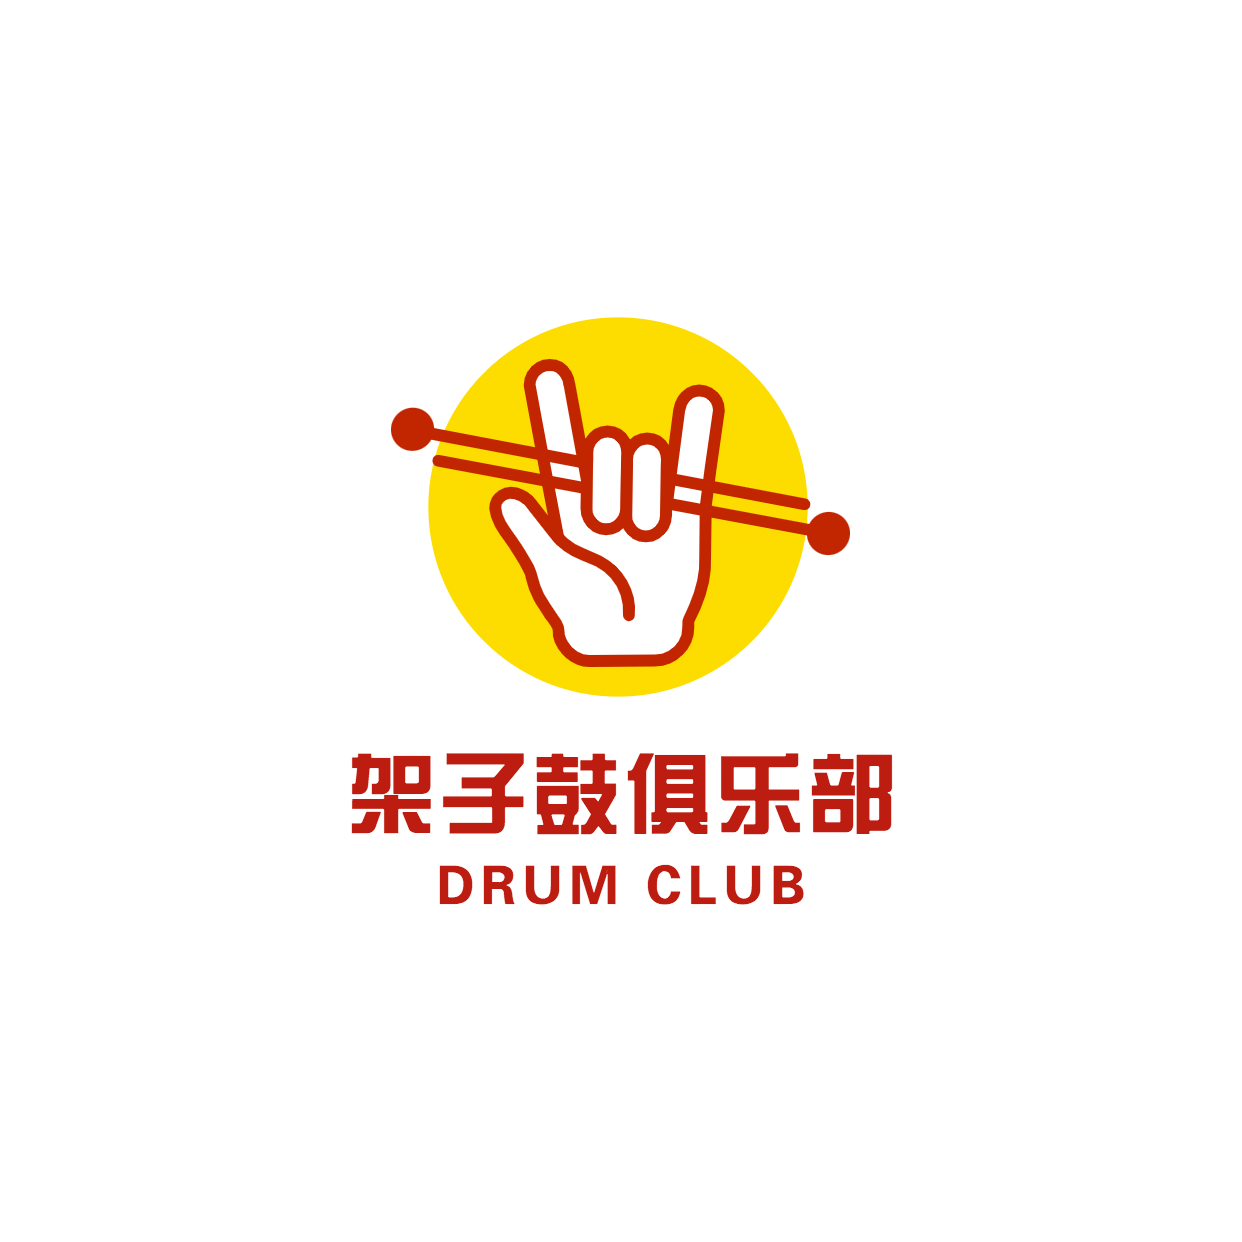 架子鼓俱乐部兴趣艺术头像logo